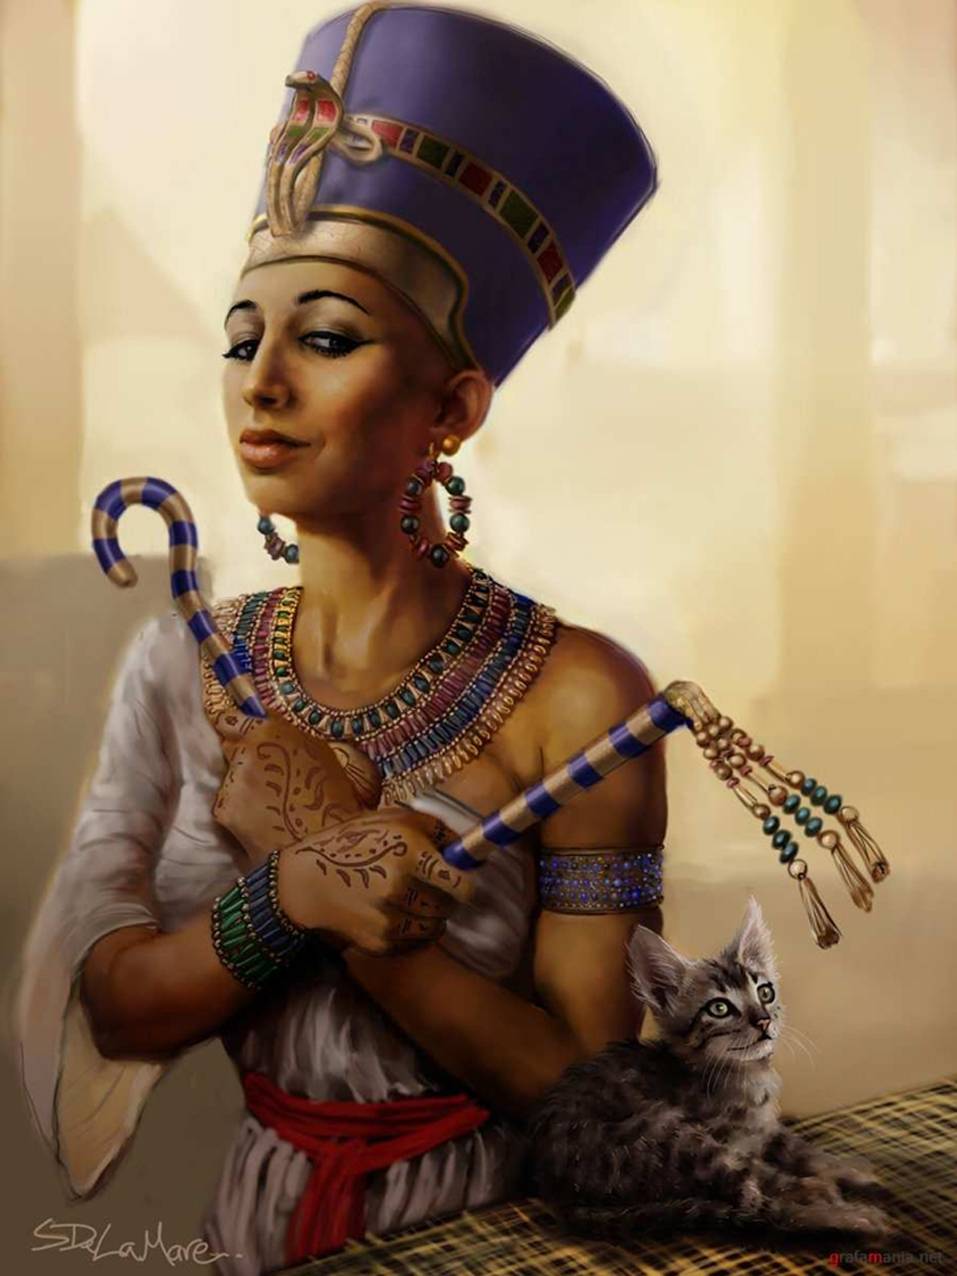 Египетская царица Нефертити арт